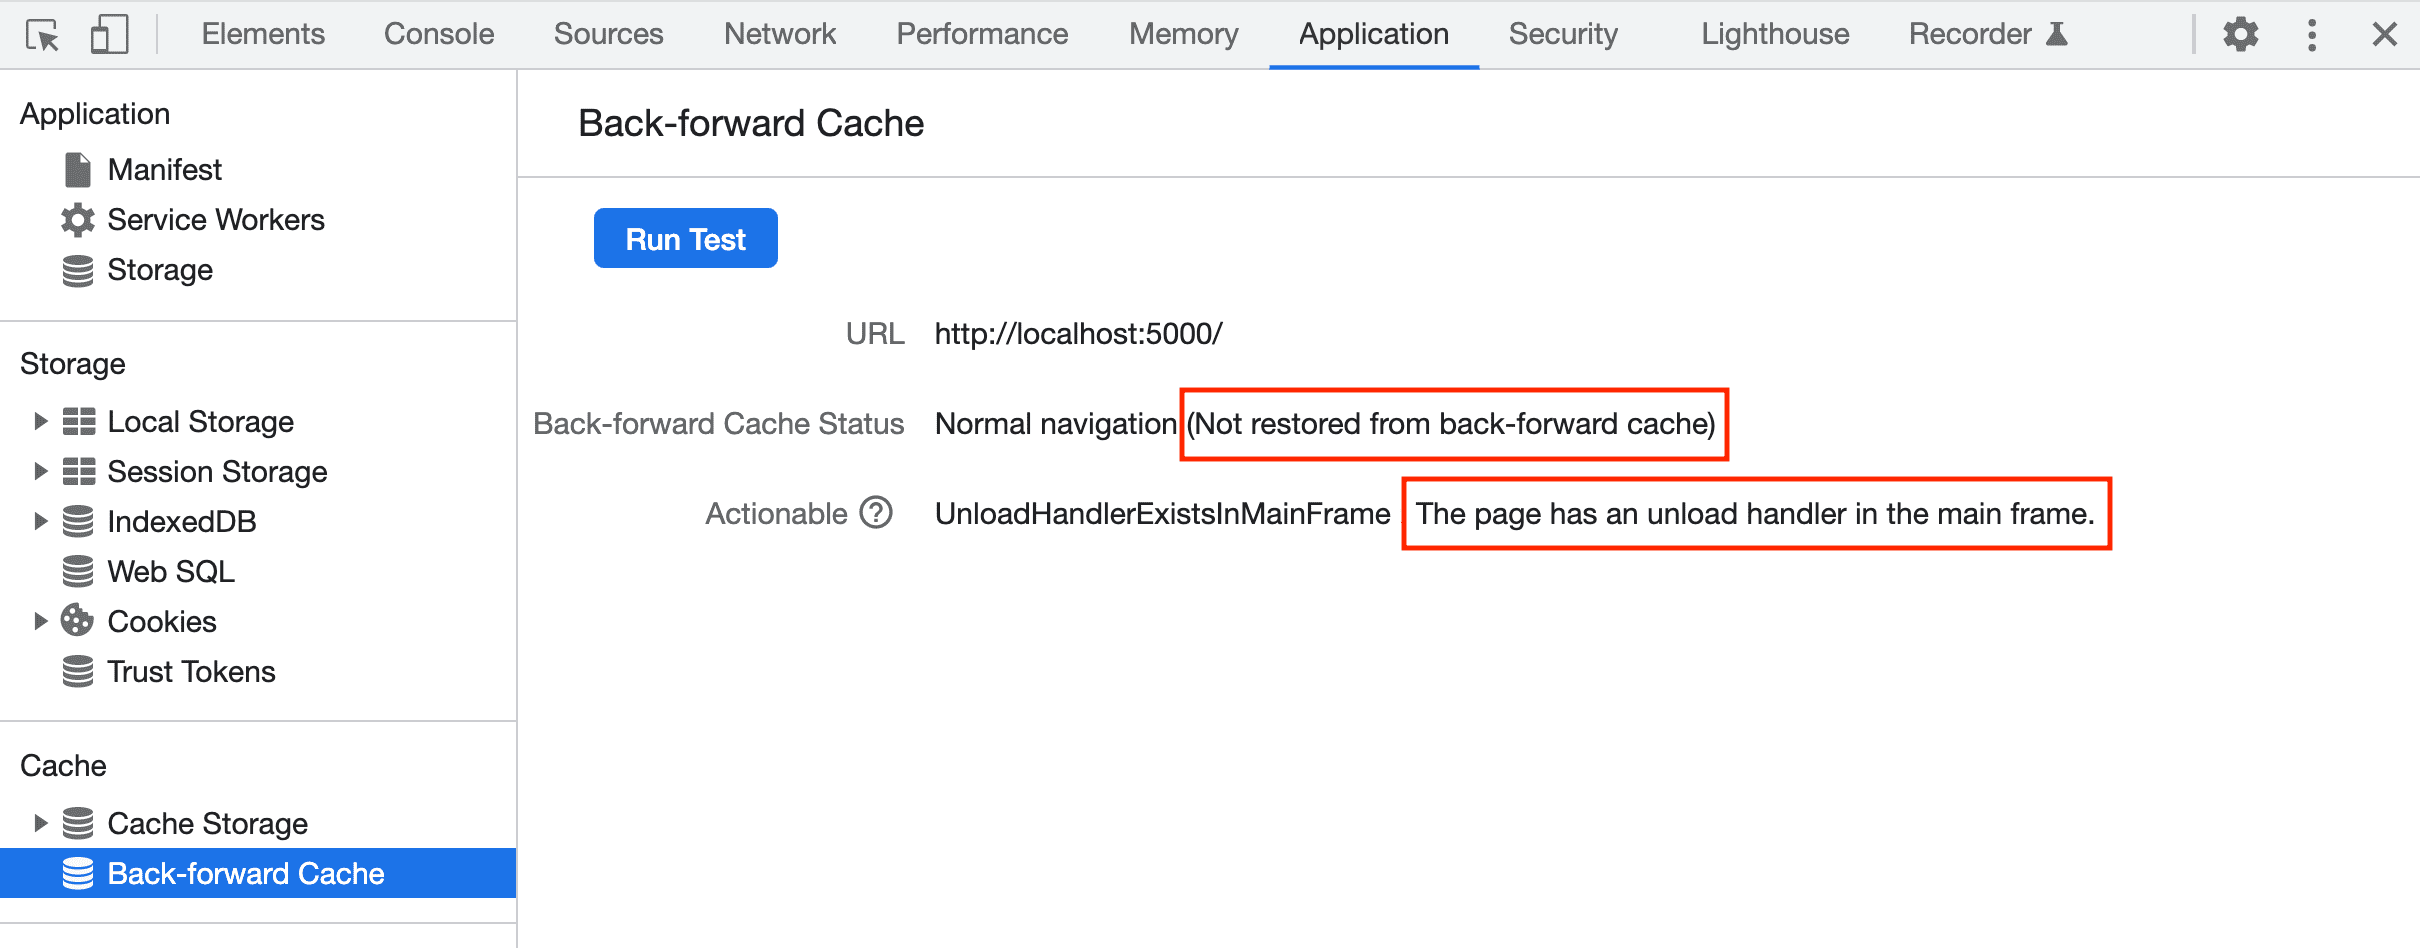 Lỗi báo cáo trong Công cụ cho nhà phát triển khi khôi phục một trang qua bộ nhớ đệm